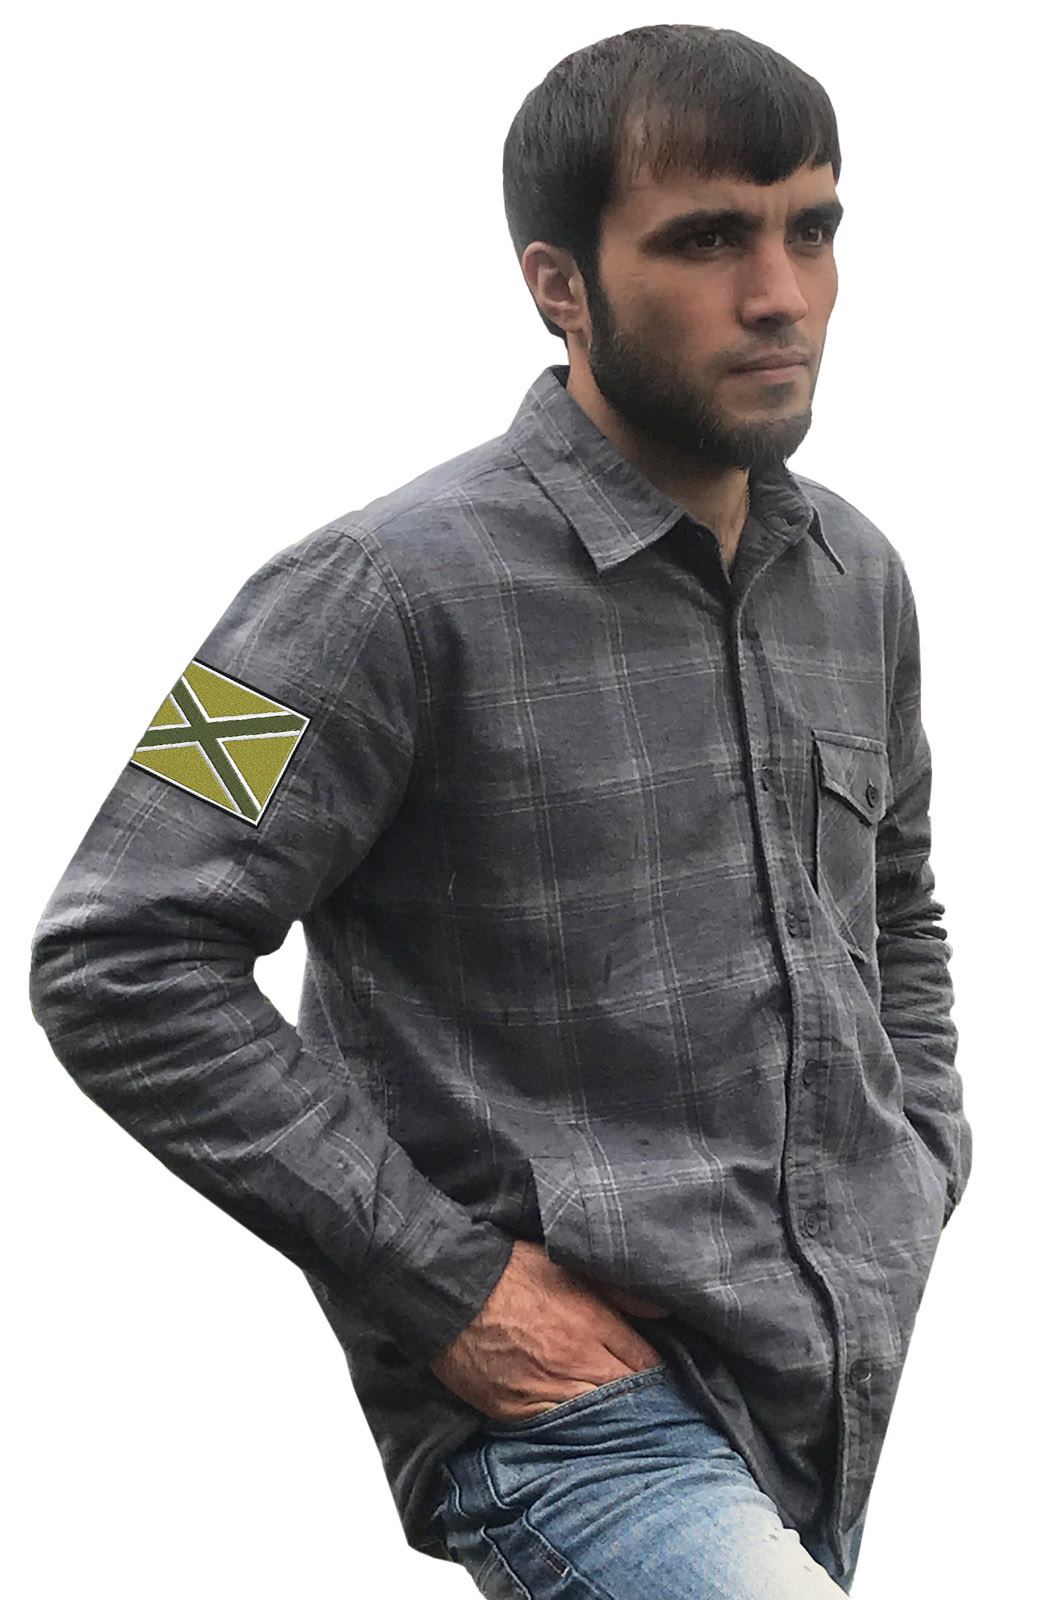 Купить стильную клетчатую рубашку с вышитым полевым шевроном Новороссия онлайн выгодно